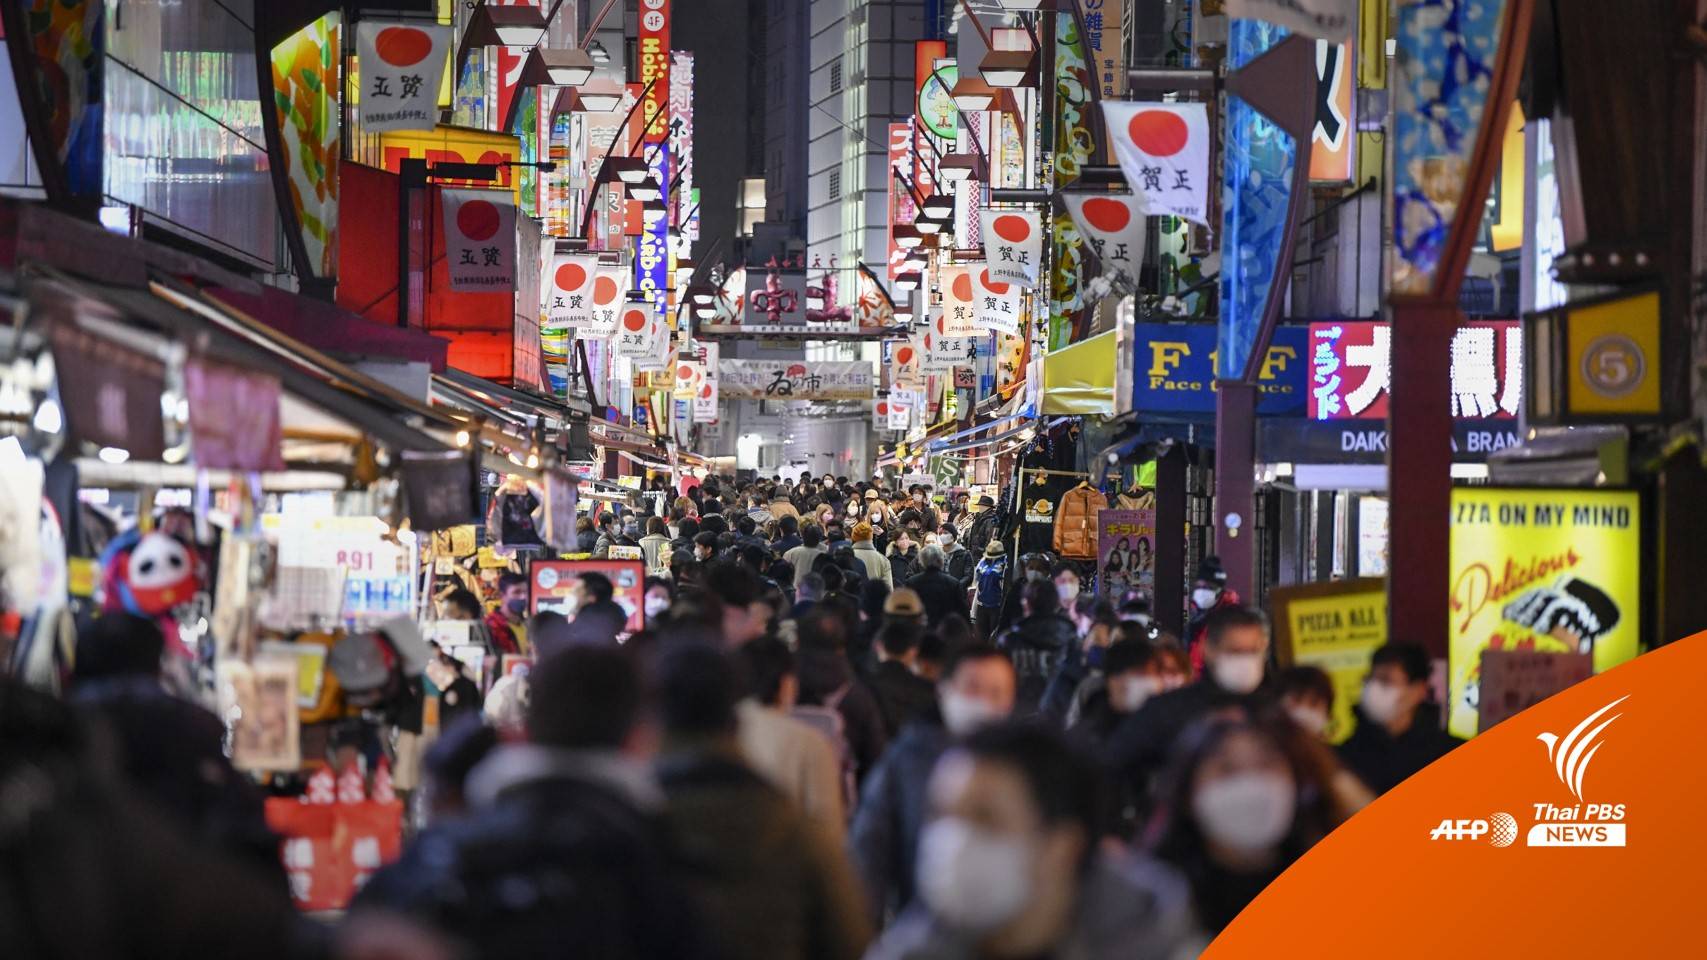 คนไทยวางแผนเที่ยวญี่ปุ่นเพียบ หลังเงินเยนอ่อนค่าสุดในรอบ 20 ปี  